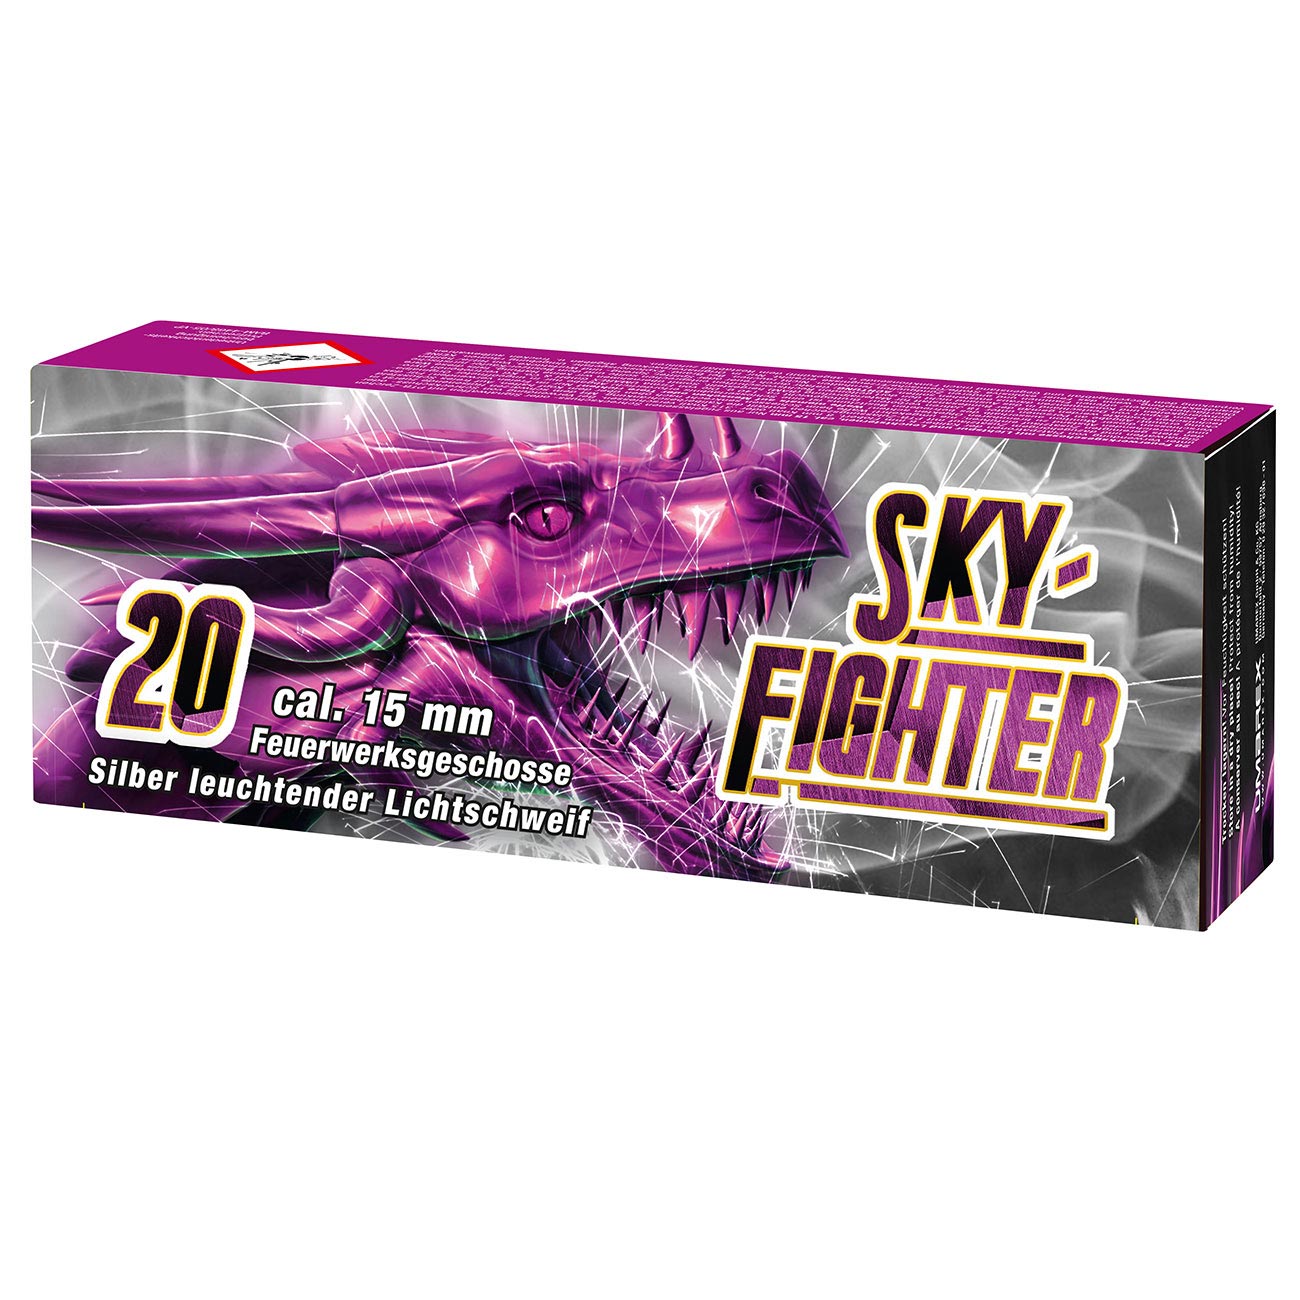 Sky Fighter Signaleffekte mit silber leuchtendem Lichtschweif 20 Stück für Schreckschusswaffen Bild 1